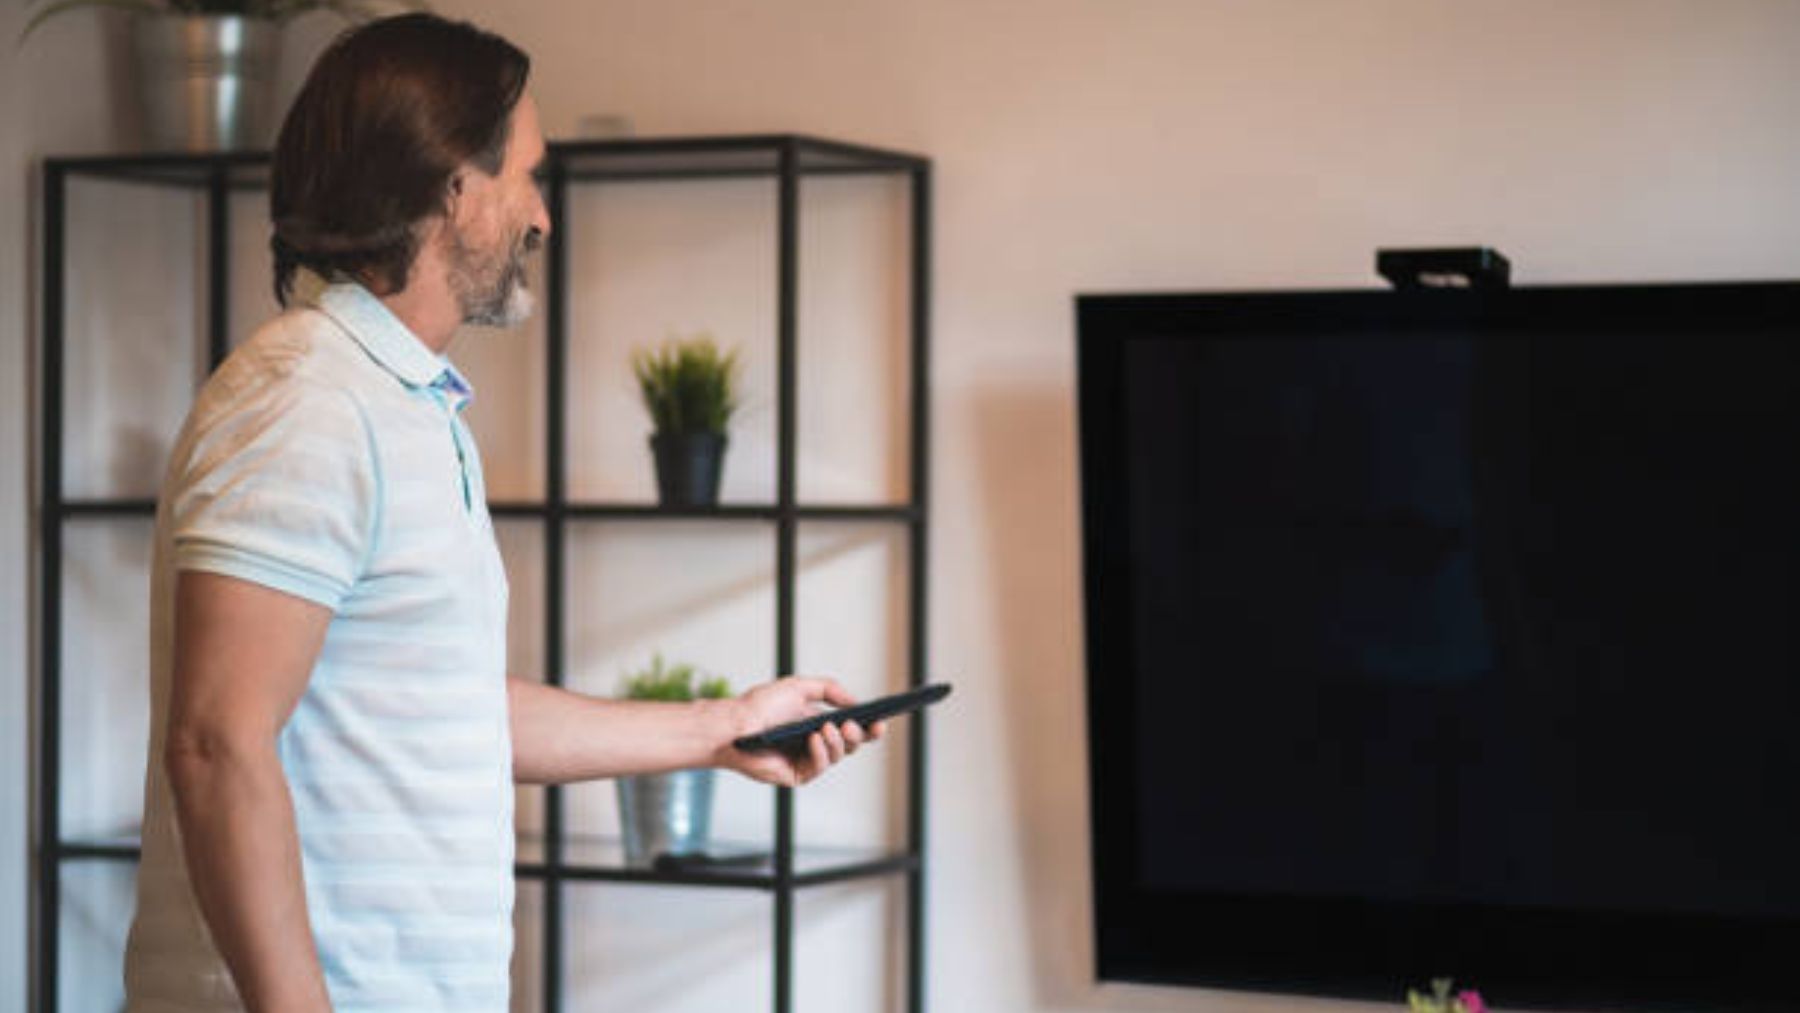 Cable o WiFi para conectar Smart TV a internet: ventajas e inconvenientes